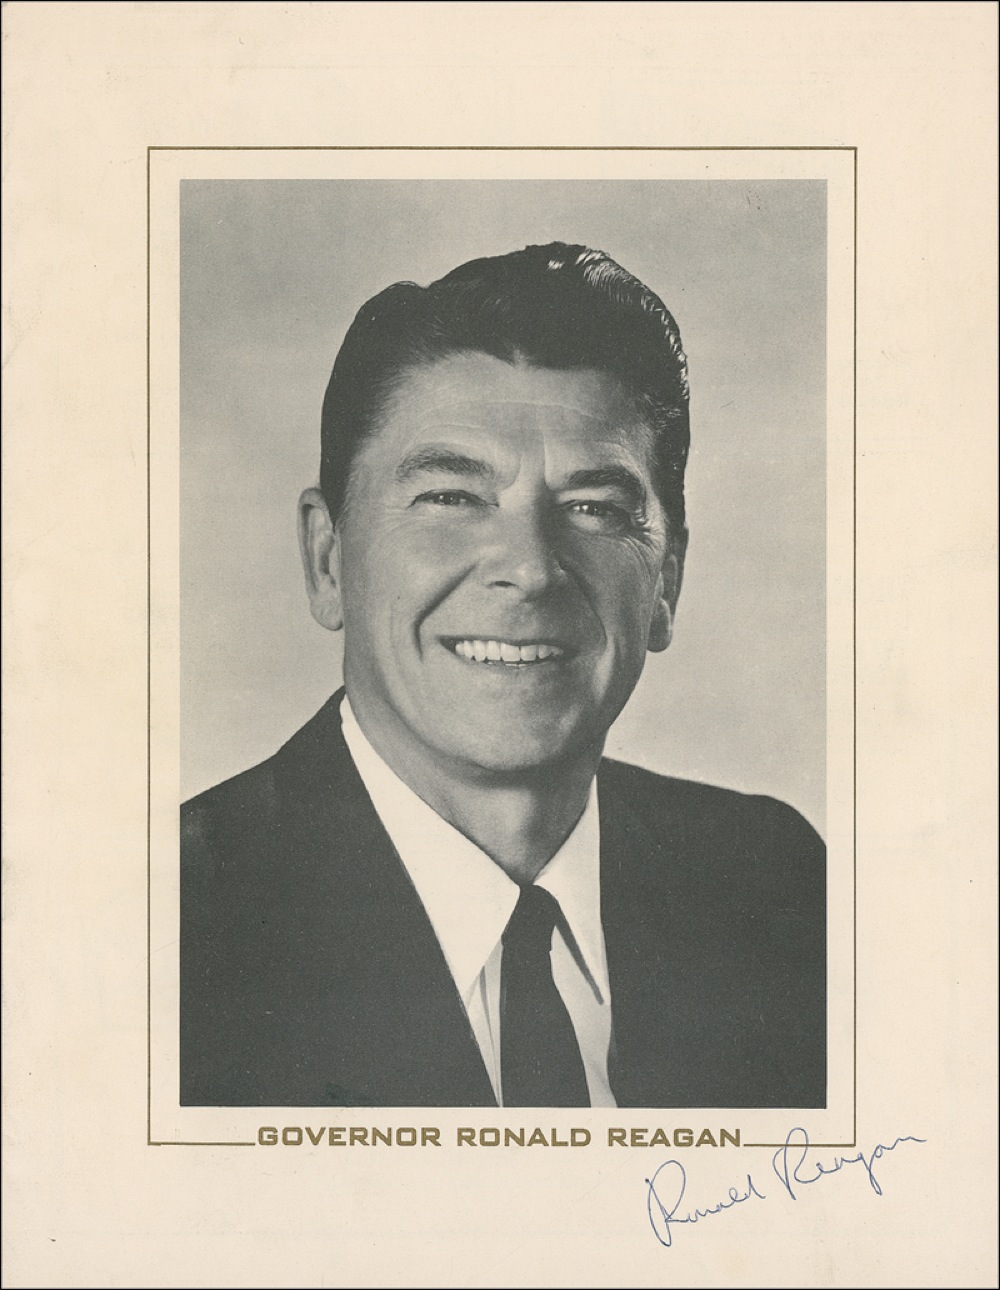 Lot #124 Ronald Reagan